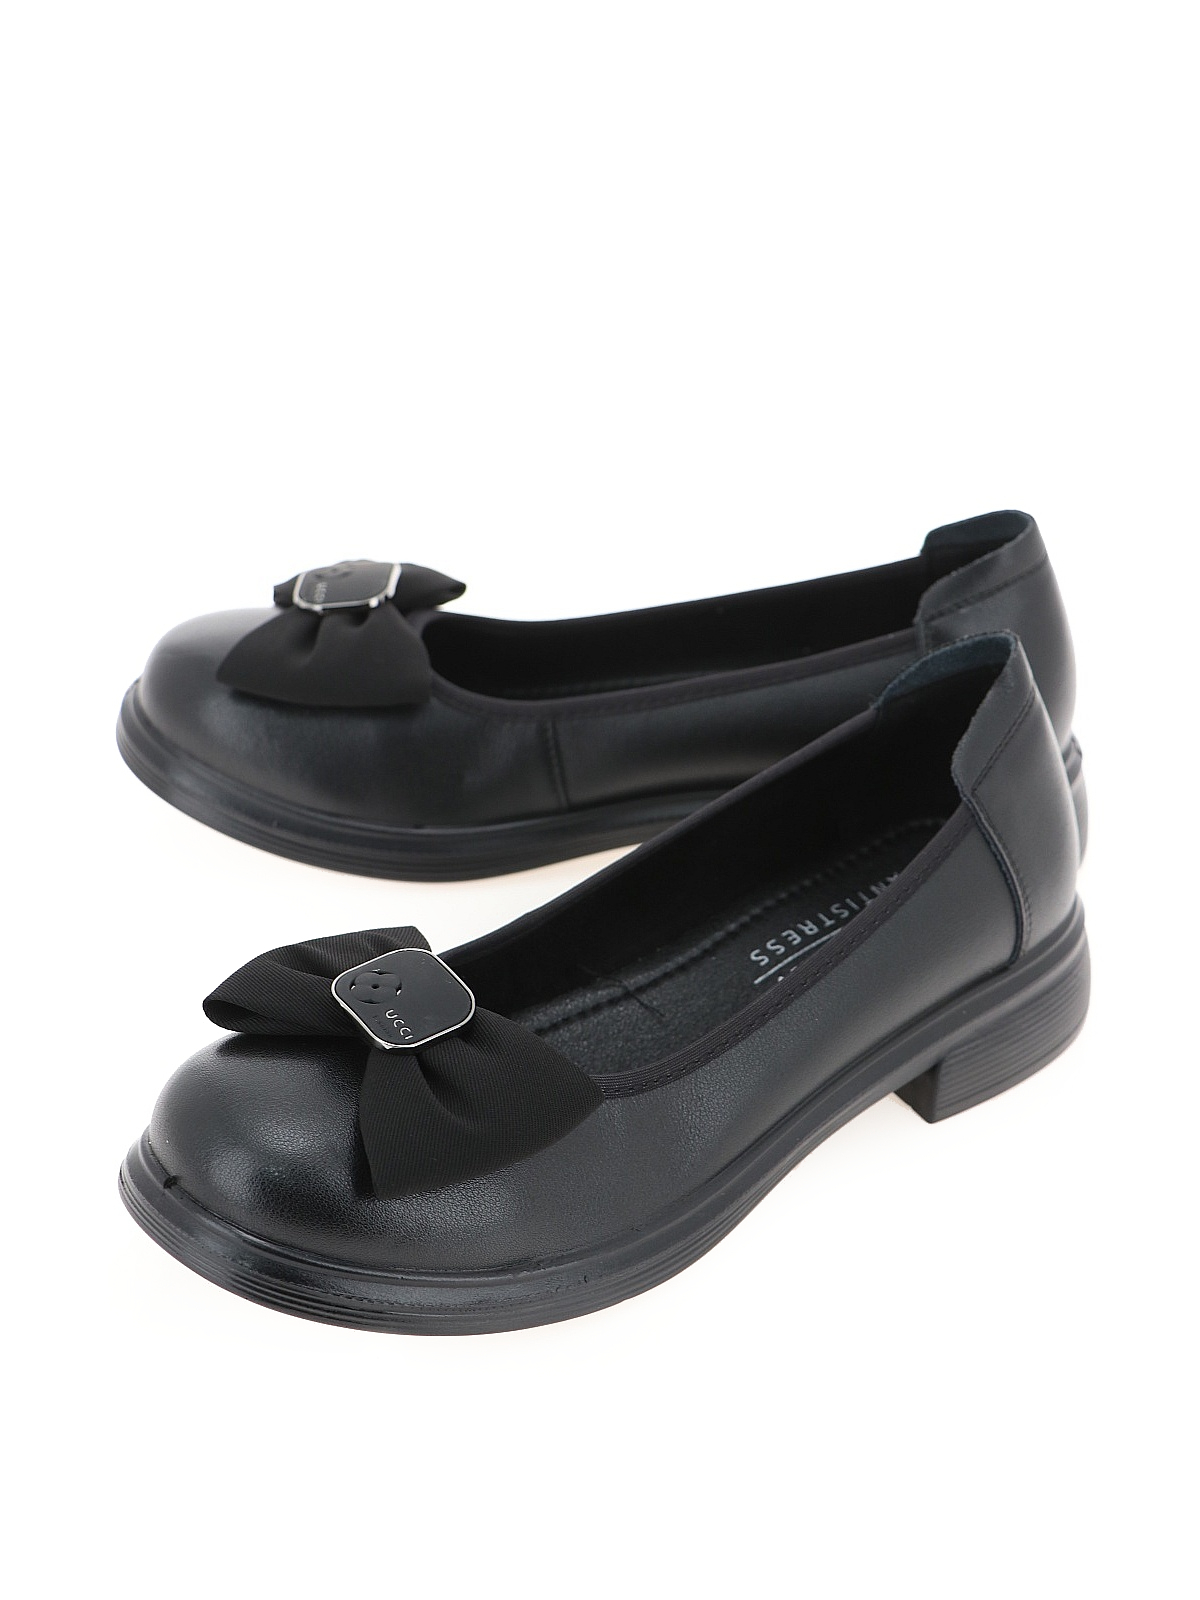 Туфли женские Baden ME306-02 черные 37 RU